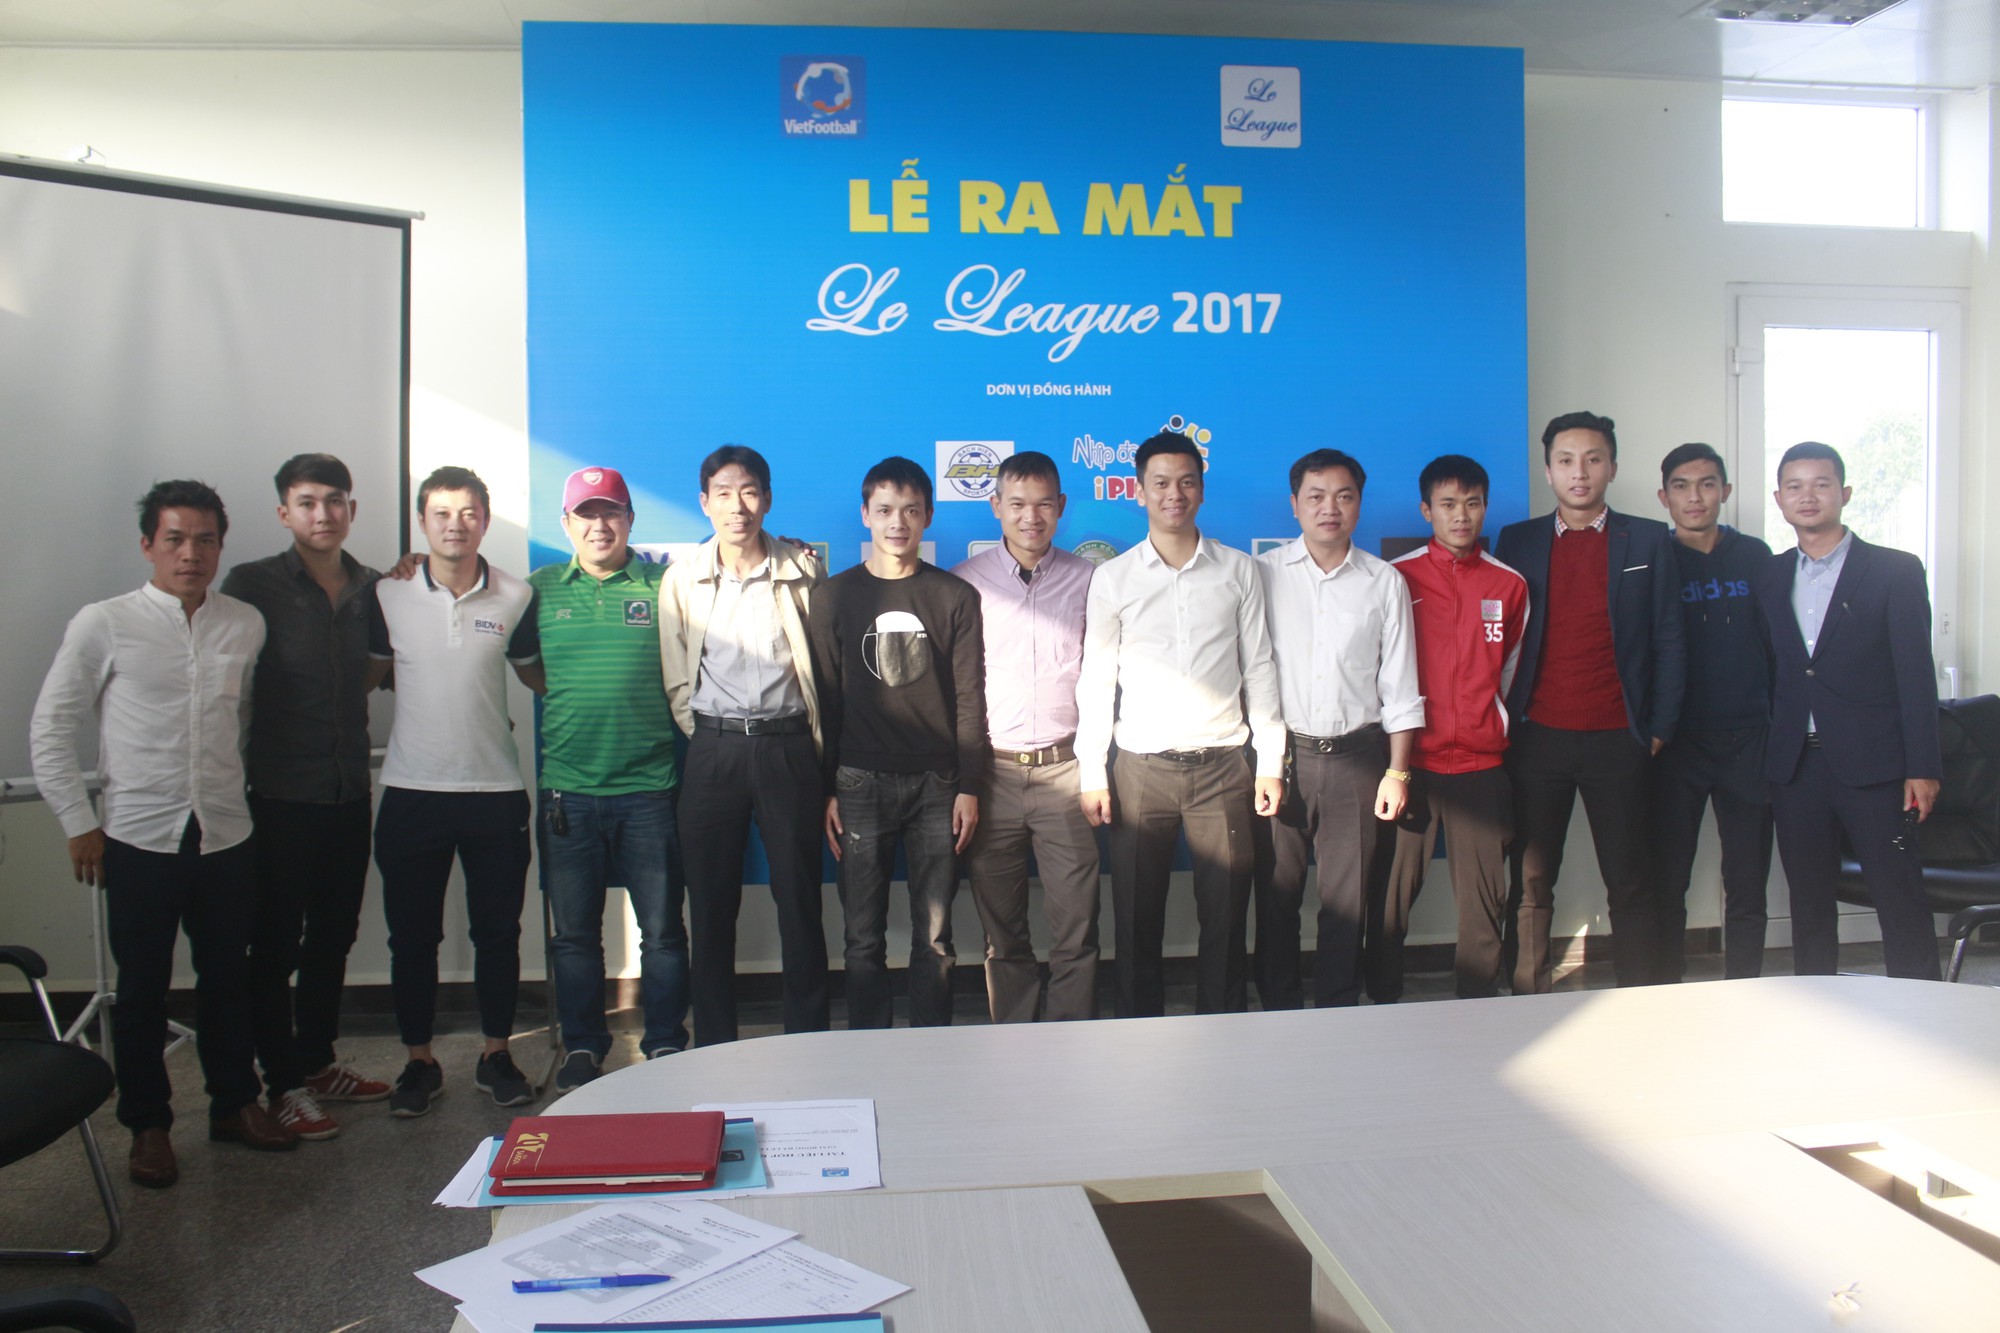 Le League 2017 có sự tham gia của các đội bóng doanh nghiệp mạnh nhất trong và ngoài Hà Nội